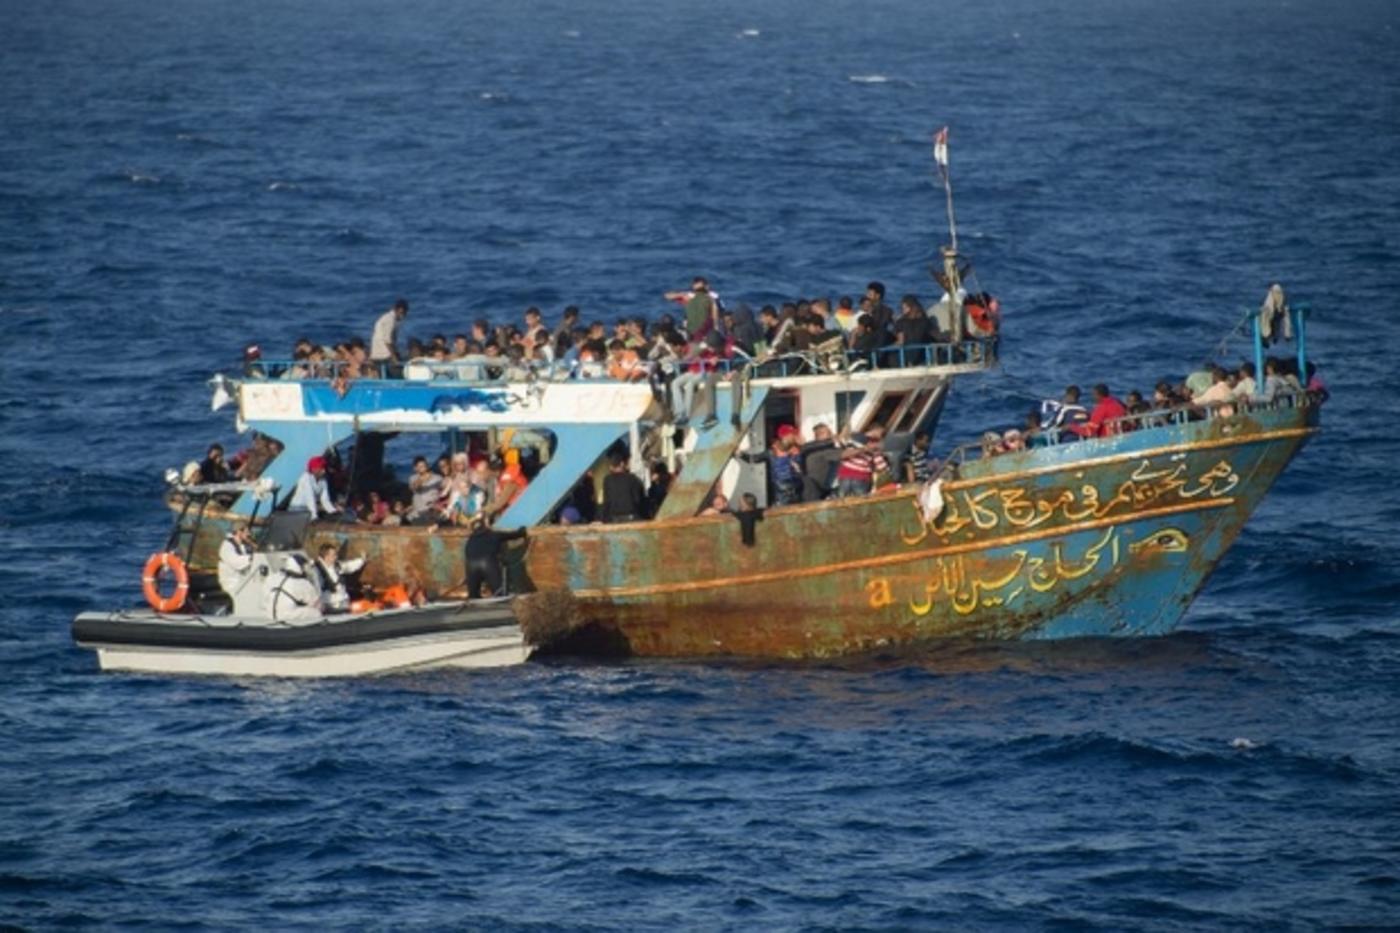 Le mystère du « bateau fantôme » : des indices relient des passeurs  égyptiens au naufrage tragique | Middle East Eye édition française